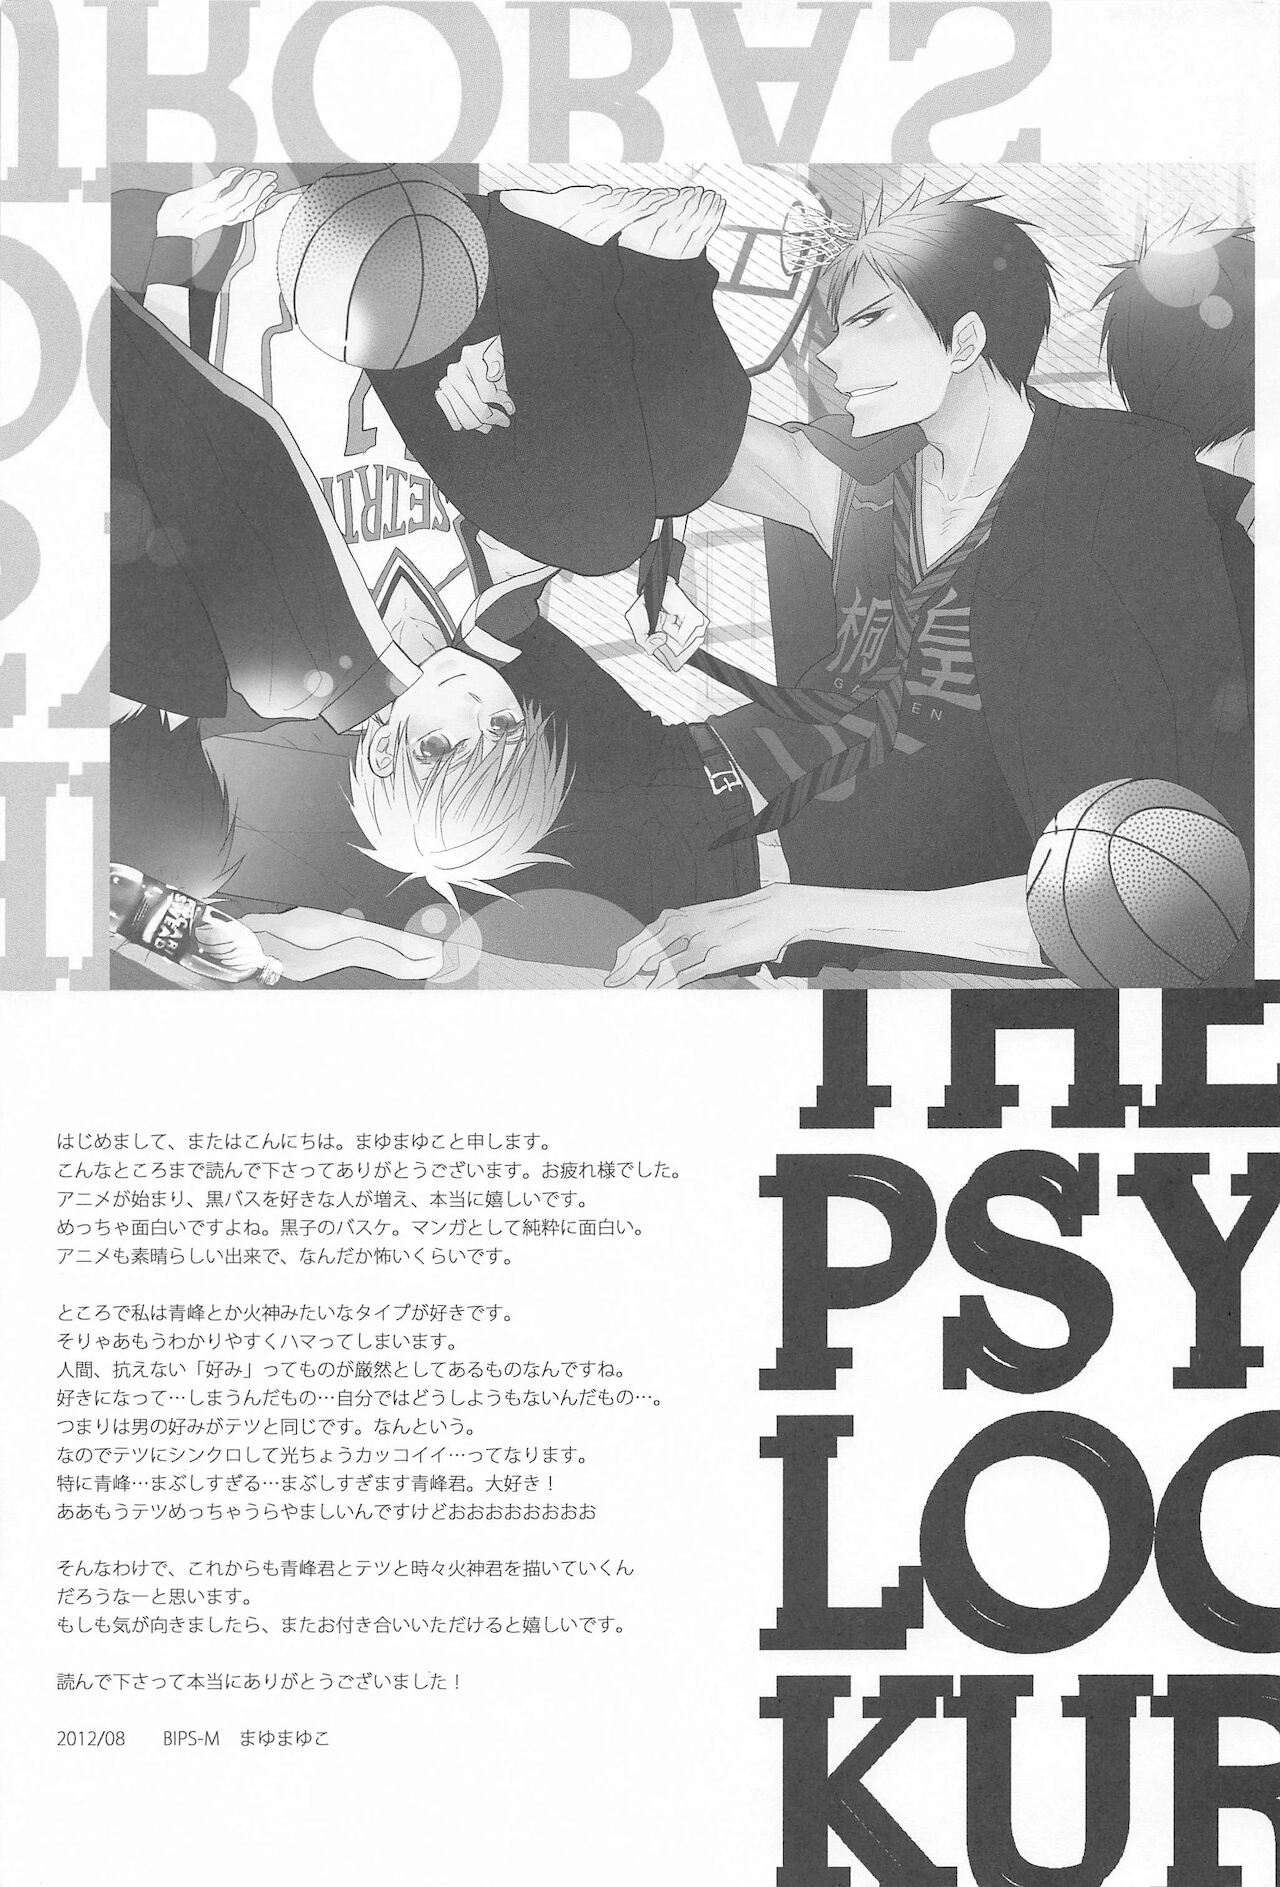 [BIPS-M] THE PSYLOCK OF KUROBAS (黒子のバスケ)